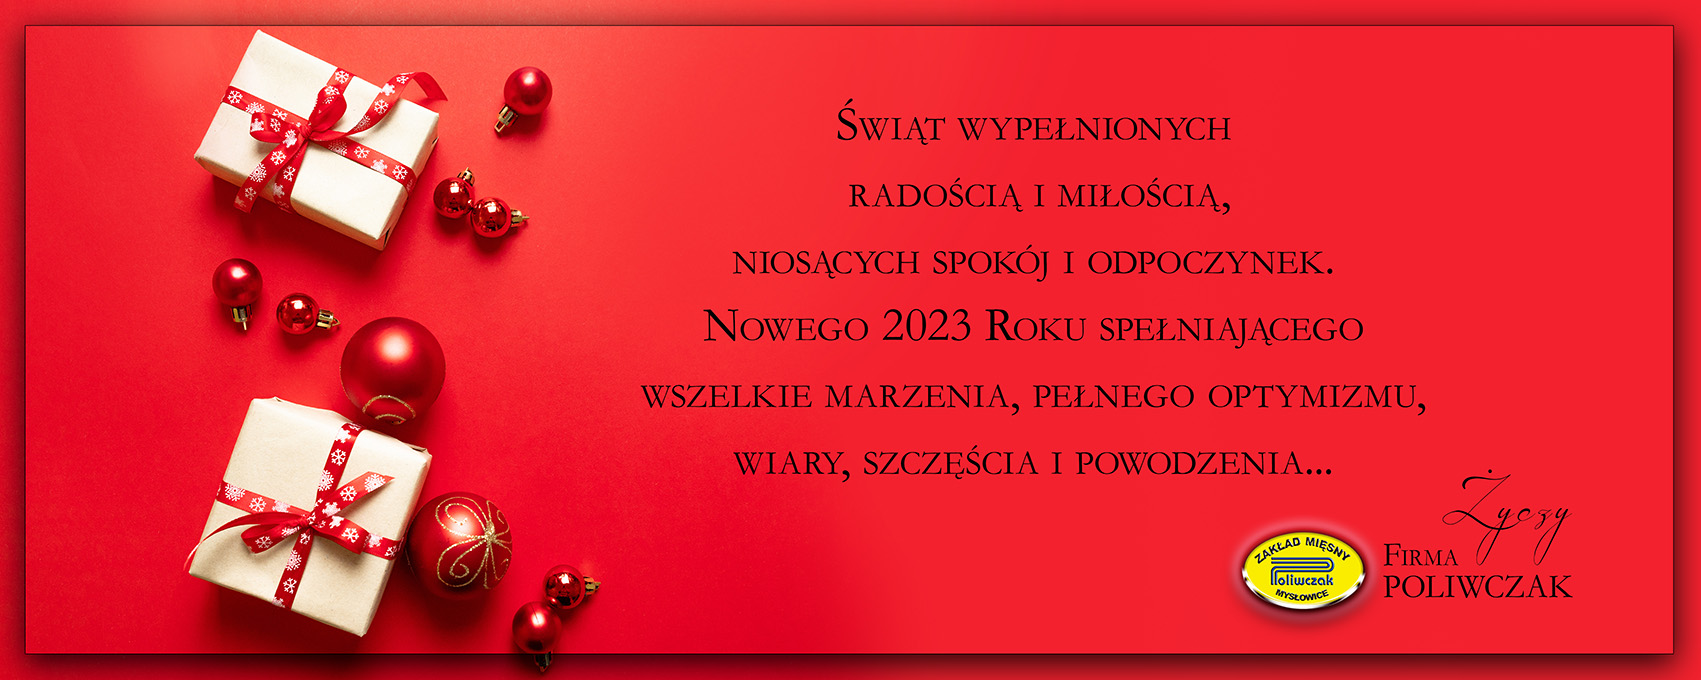 kartka Poliwczak_2022.jpg